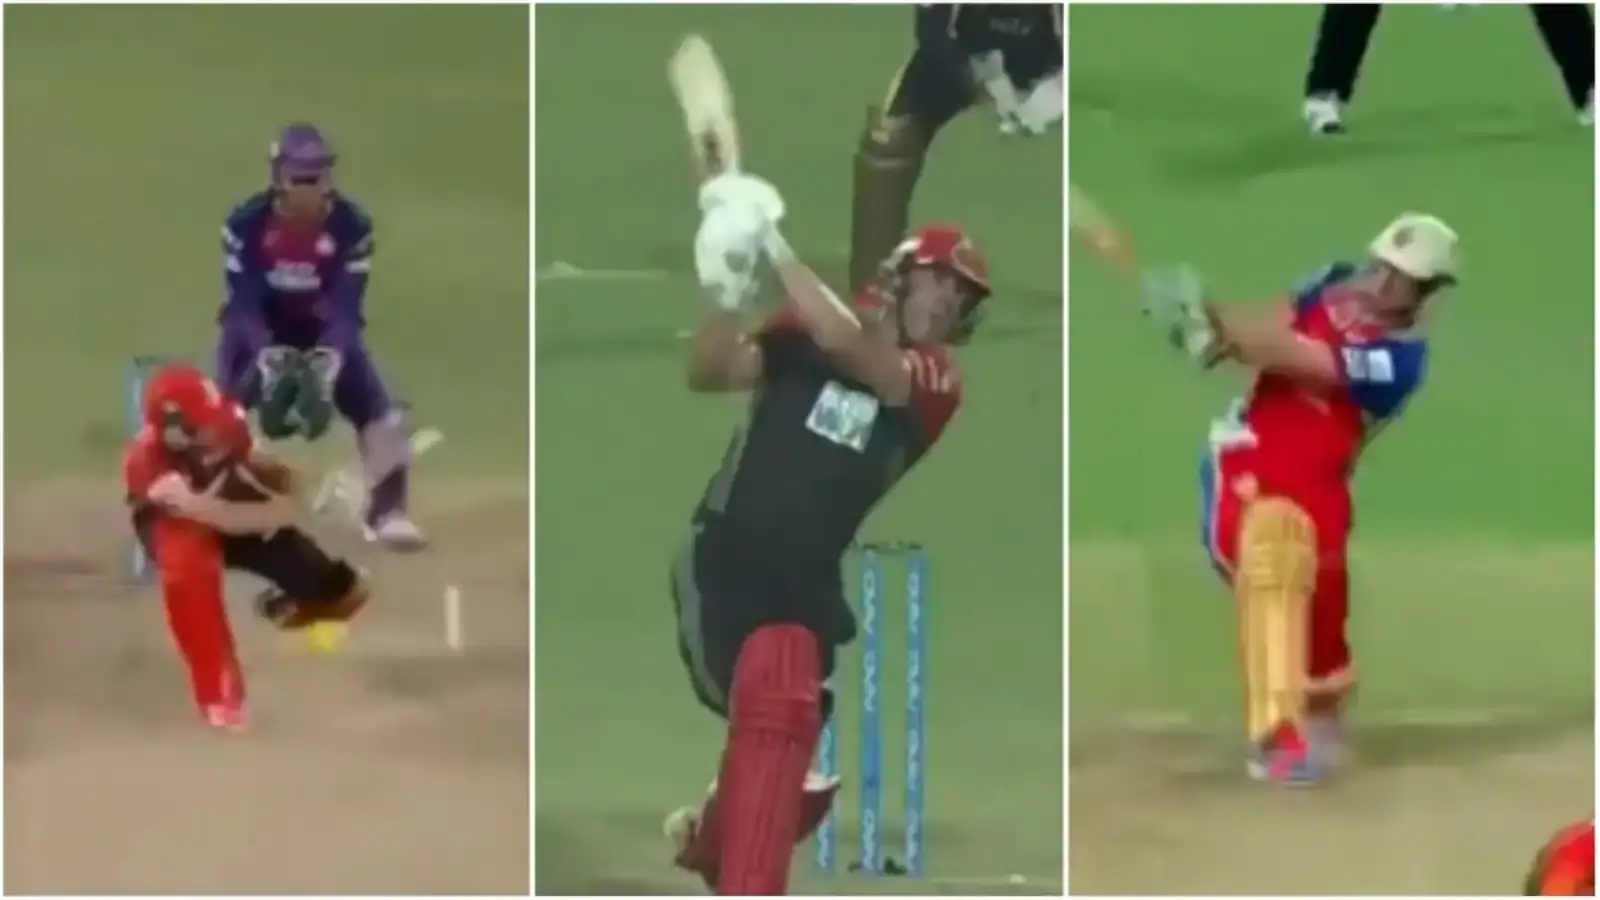  देखें: डिविलियर्स ने बाएं हाथ से बल्लेबाजी करते हुए उनके शानदार प्रशंसक-निर्मित वीडियो पर प्रतिक्रिया दी |  क्रिकेट
